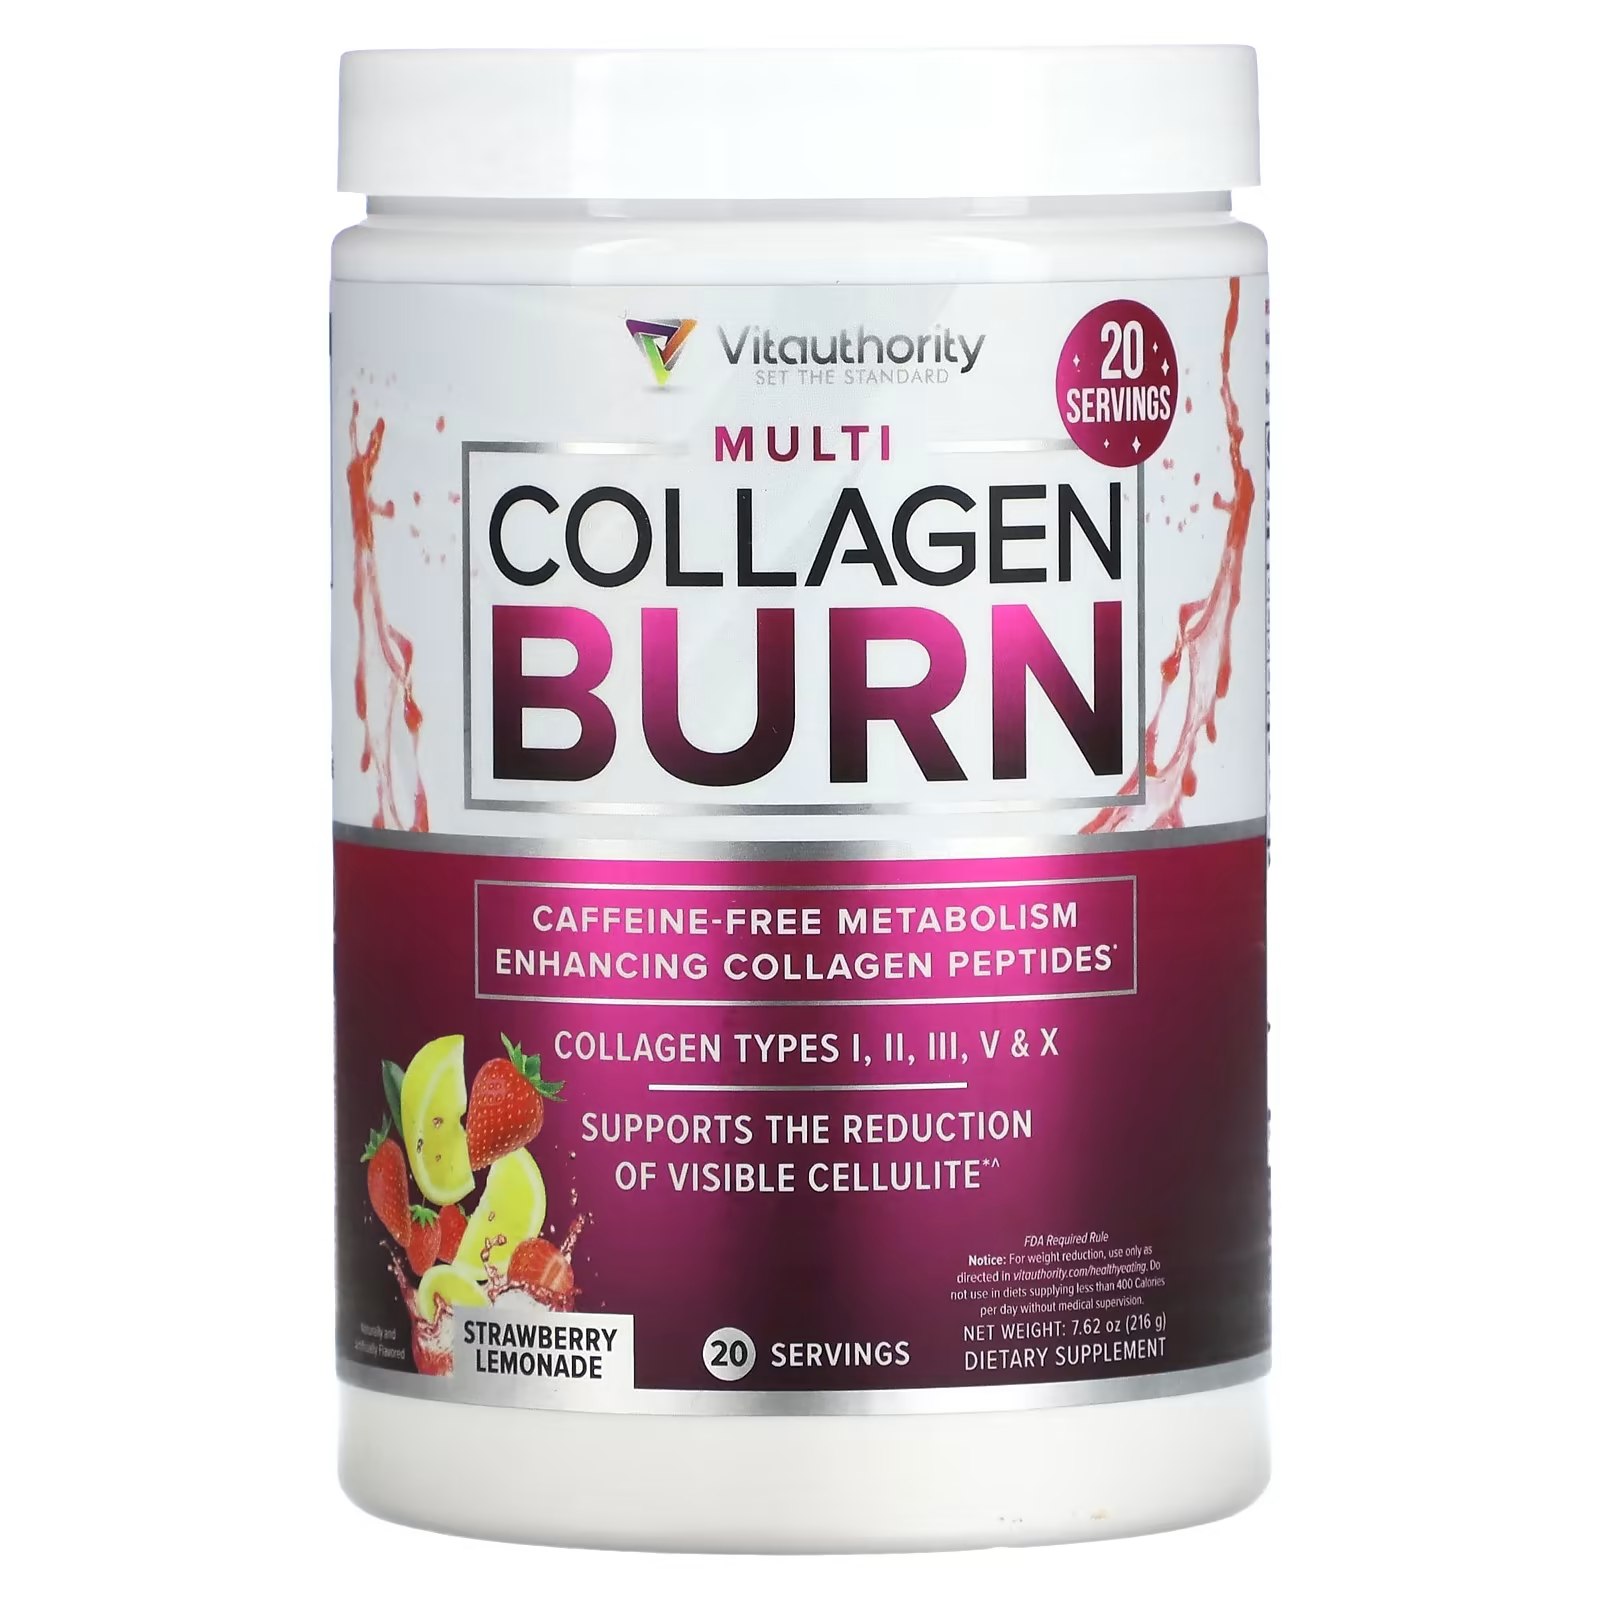 Пищевая добавка Vitauthority Multi Collagen Burn клубничный лимонад, 216г vitauthority multi collagen burn 60 капсул